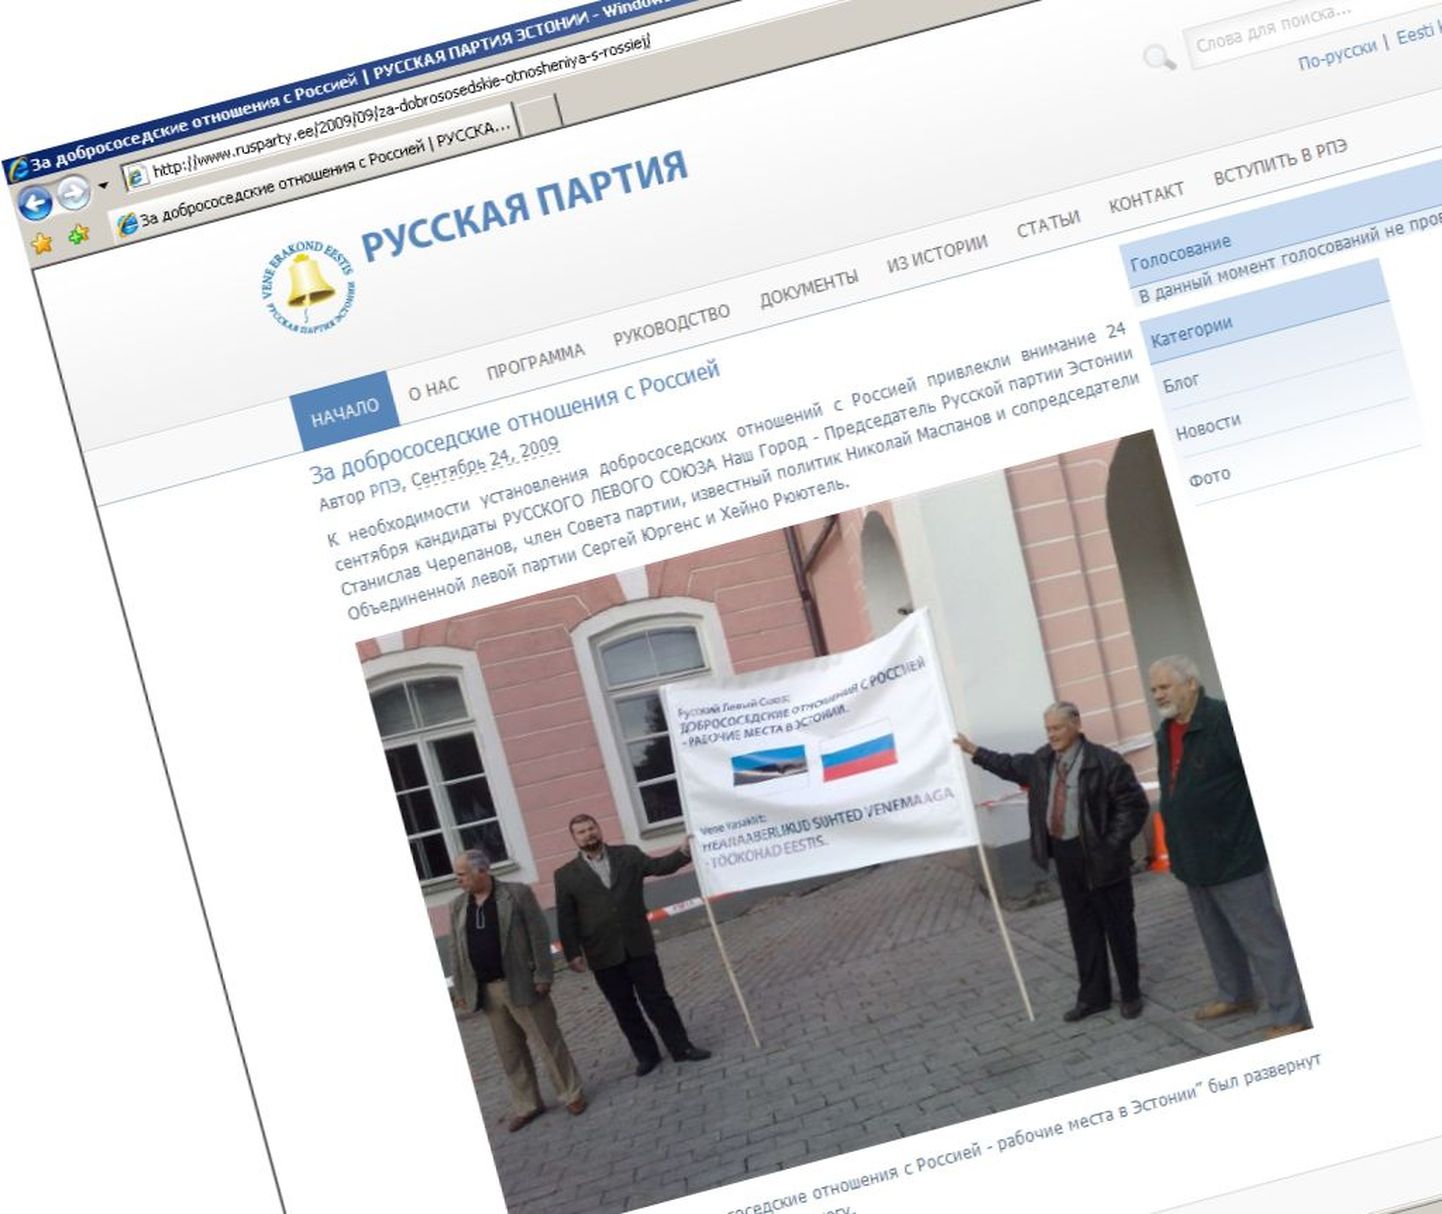 Фрагмент интернет-странички Русской партии Эстонии, которая продвигает идею создания Русской культурной автономии.